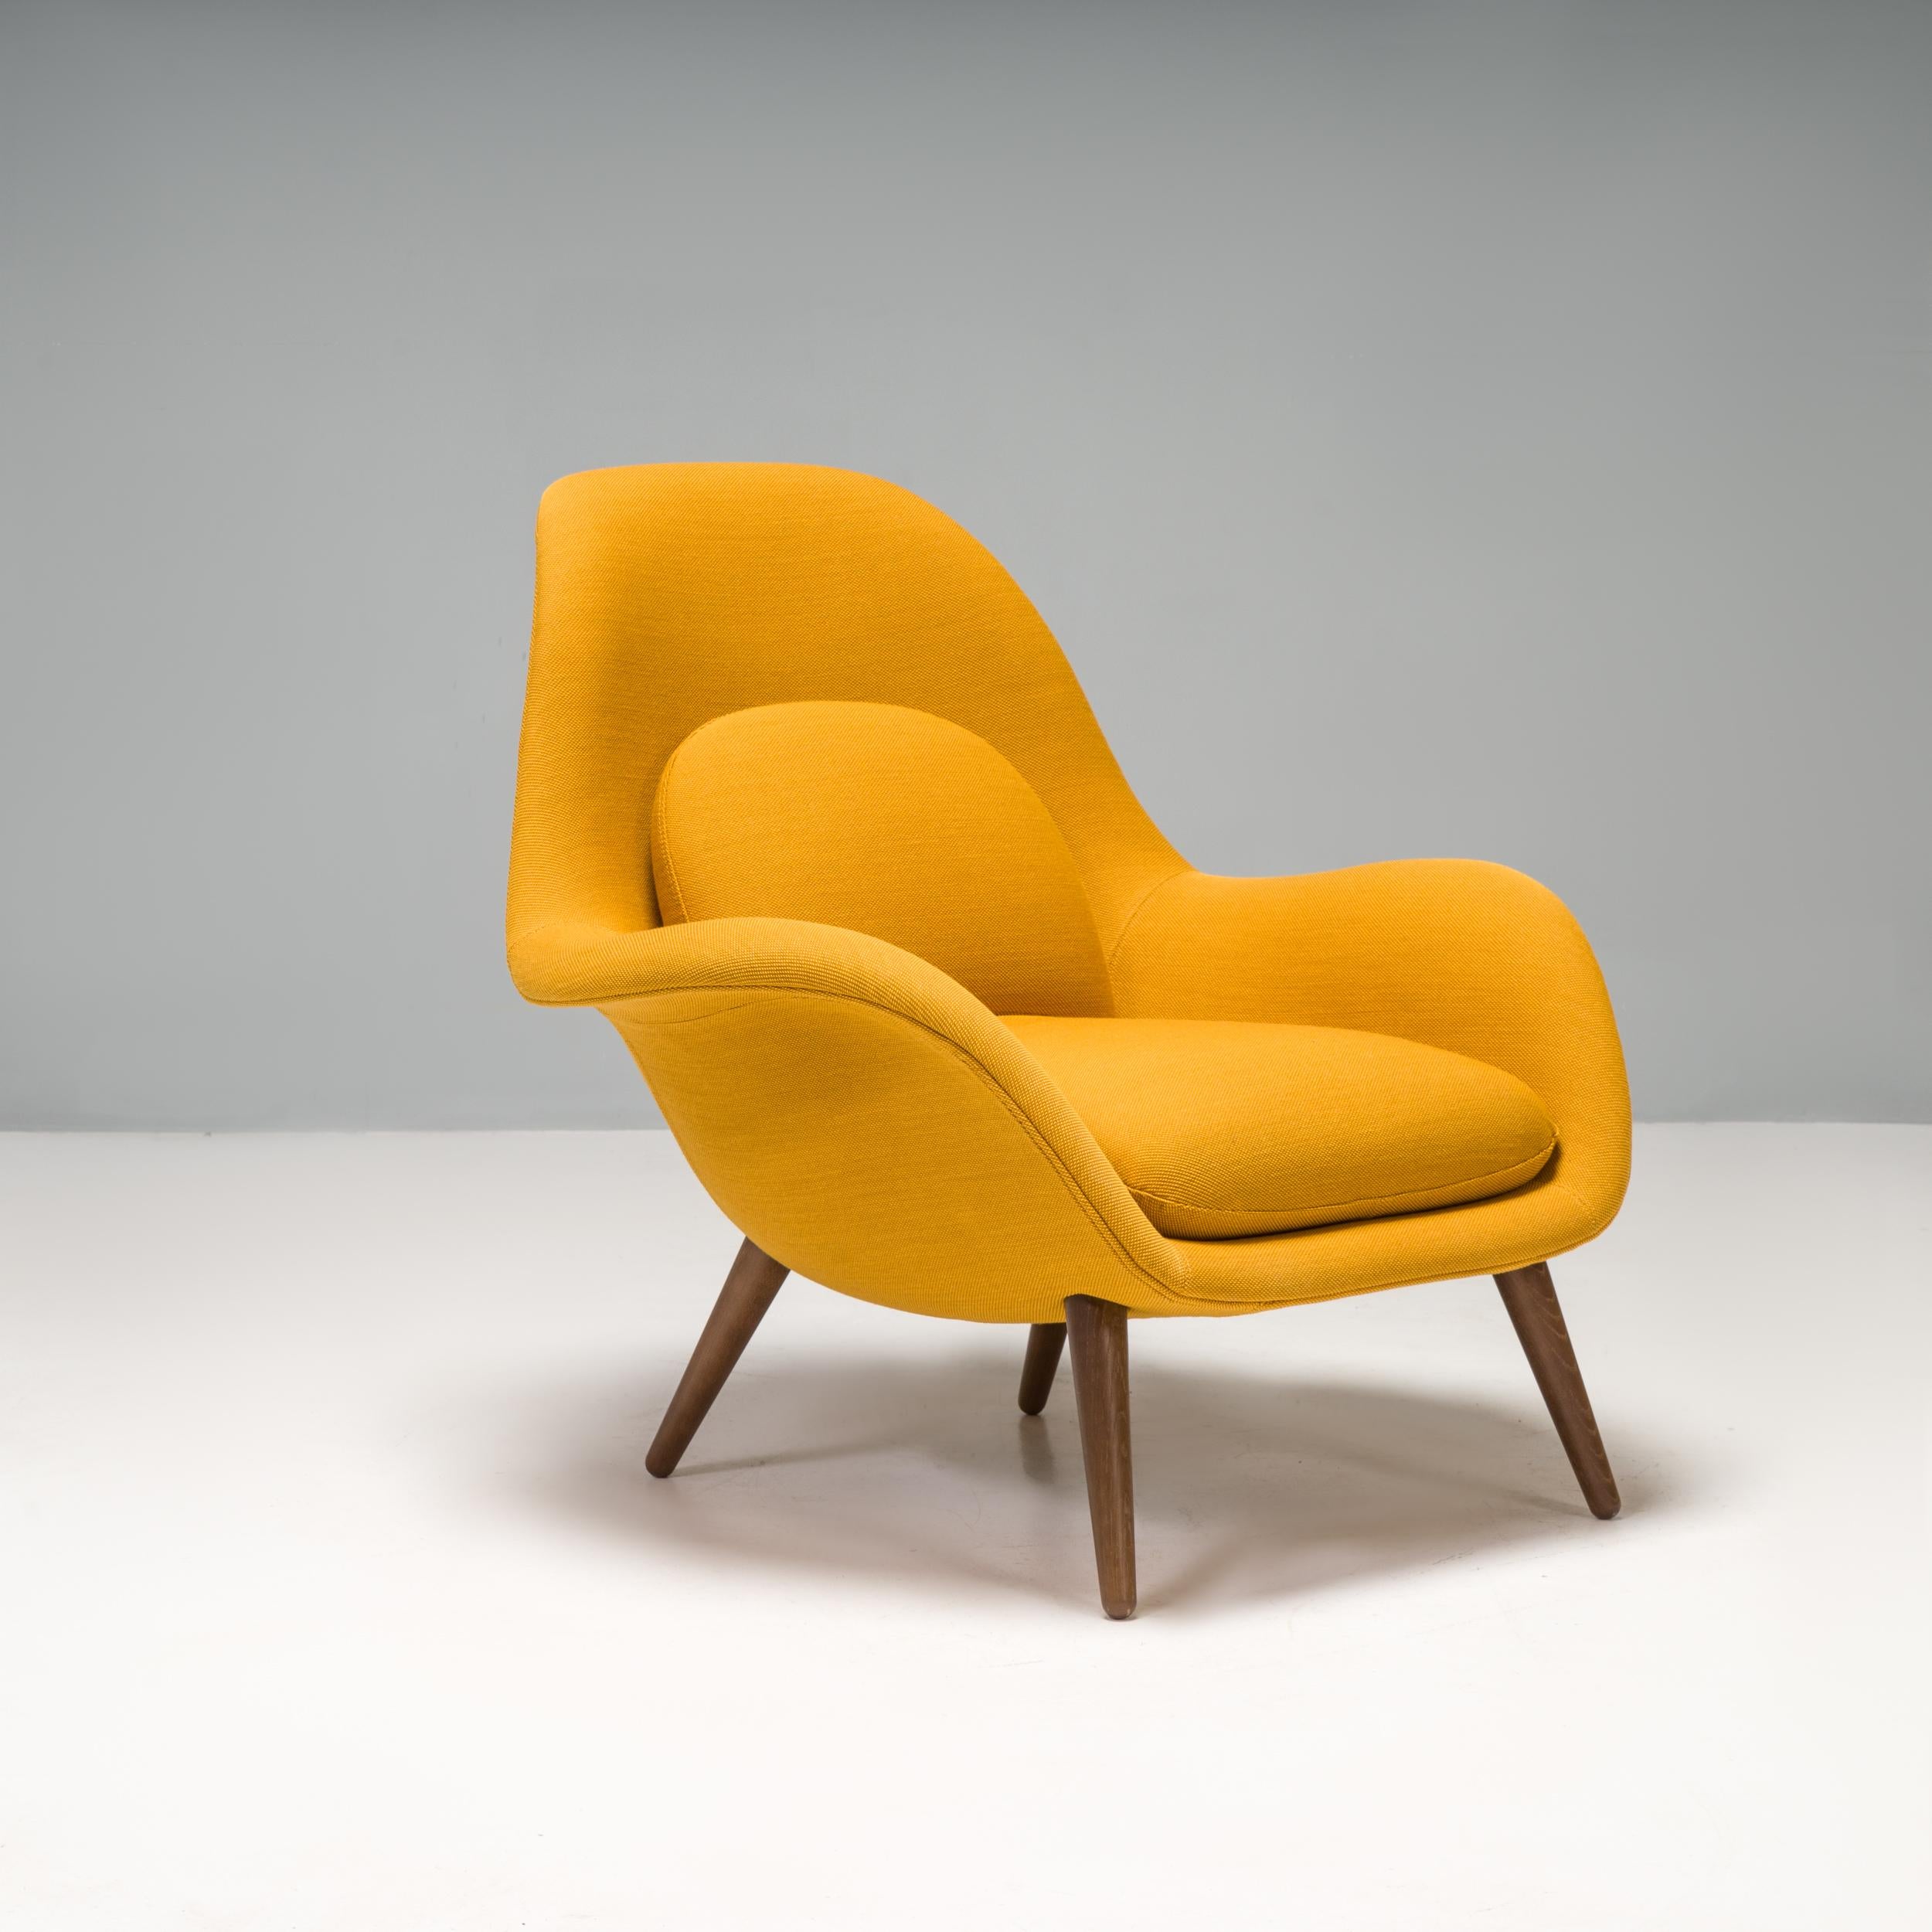 Dieser Swoon-Sessel wurde von Space Copenhagen für den dänischen Möbelhersteller Fredericia entworfen und 2021 hergestellt.

Das Gestell aus lackiertem Nussbaumholz verleiht dem Sessel mit seiner skulpturalen Silhouette und der hohen, geschwungenen